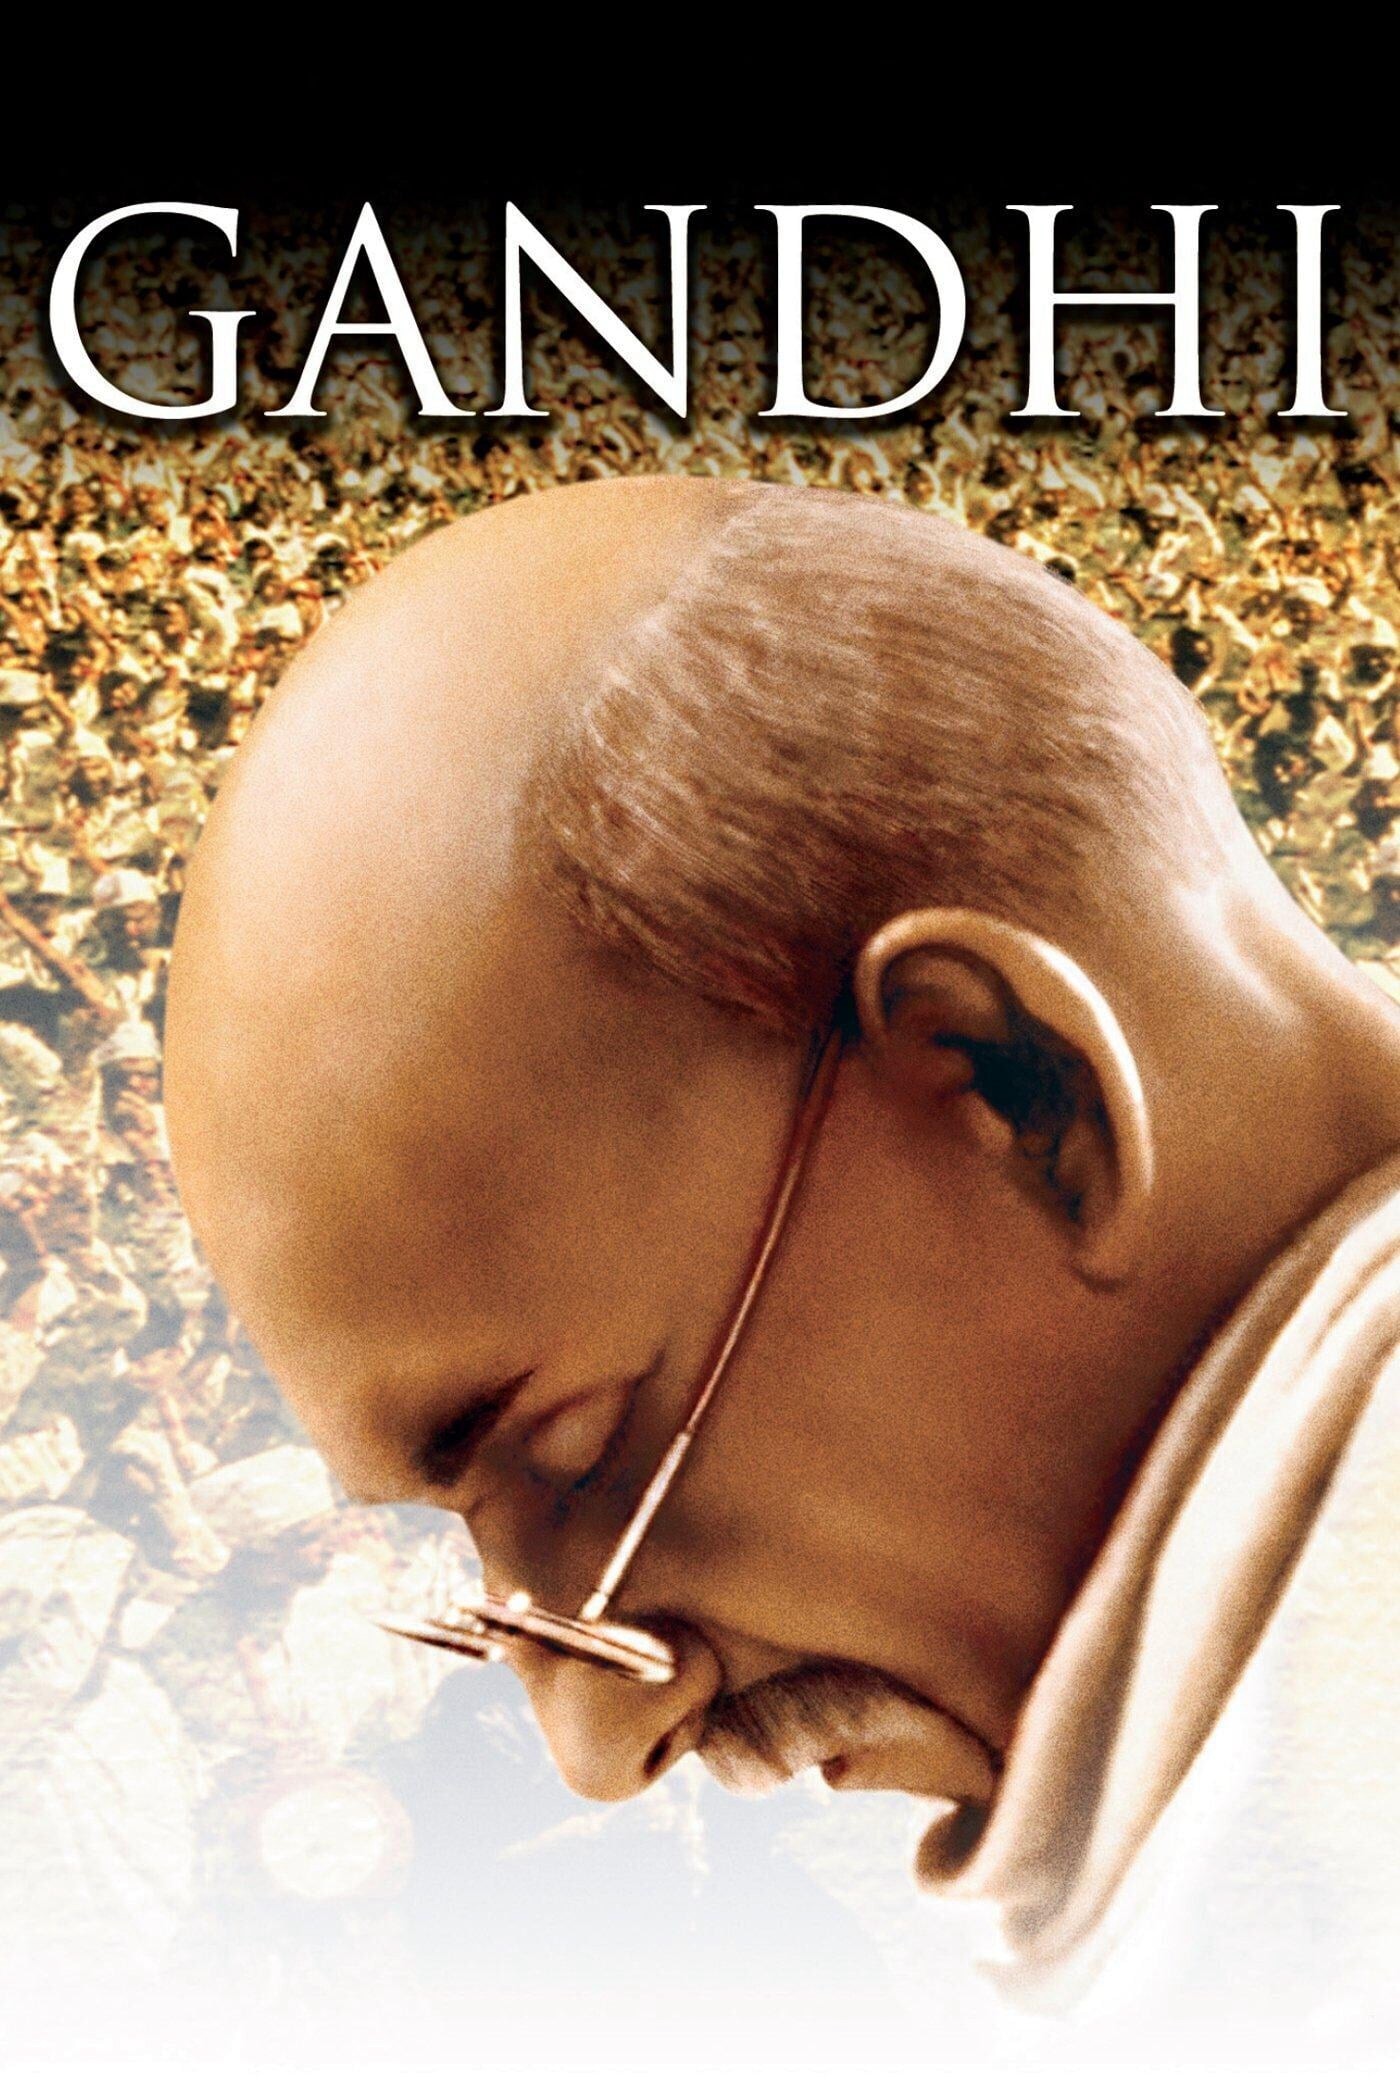 Cuộc Đời Gandhi - Cuộc Đời Gandhi